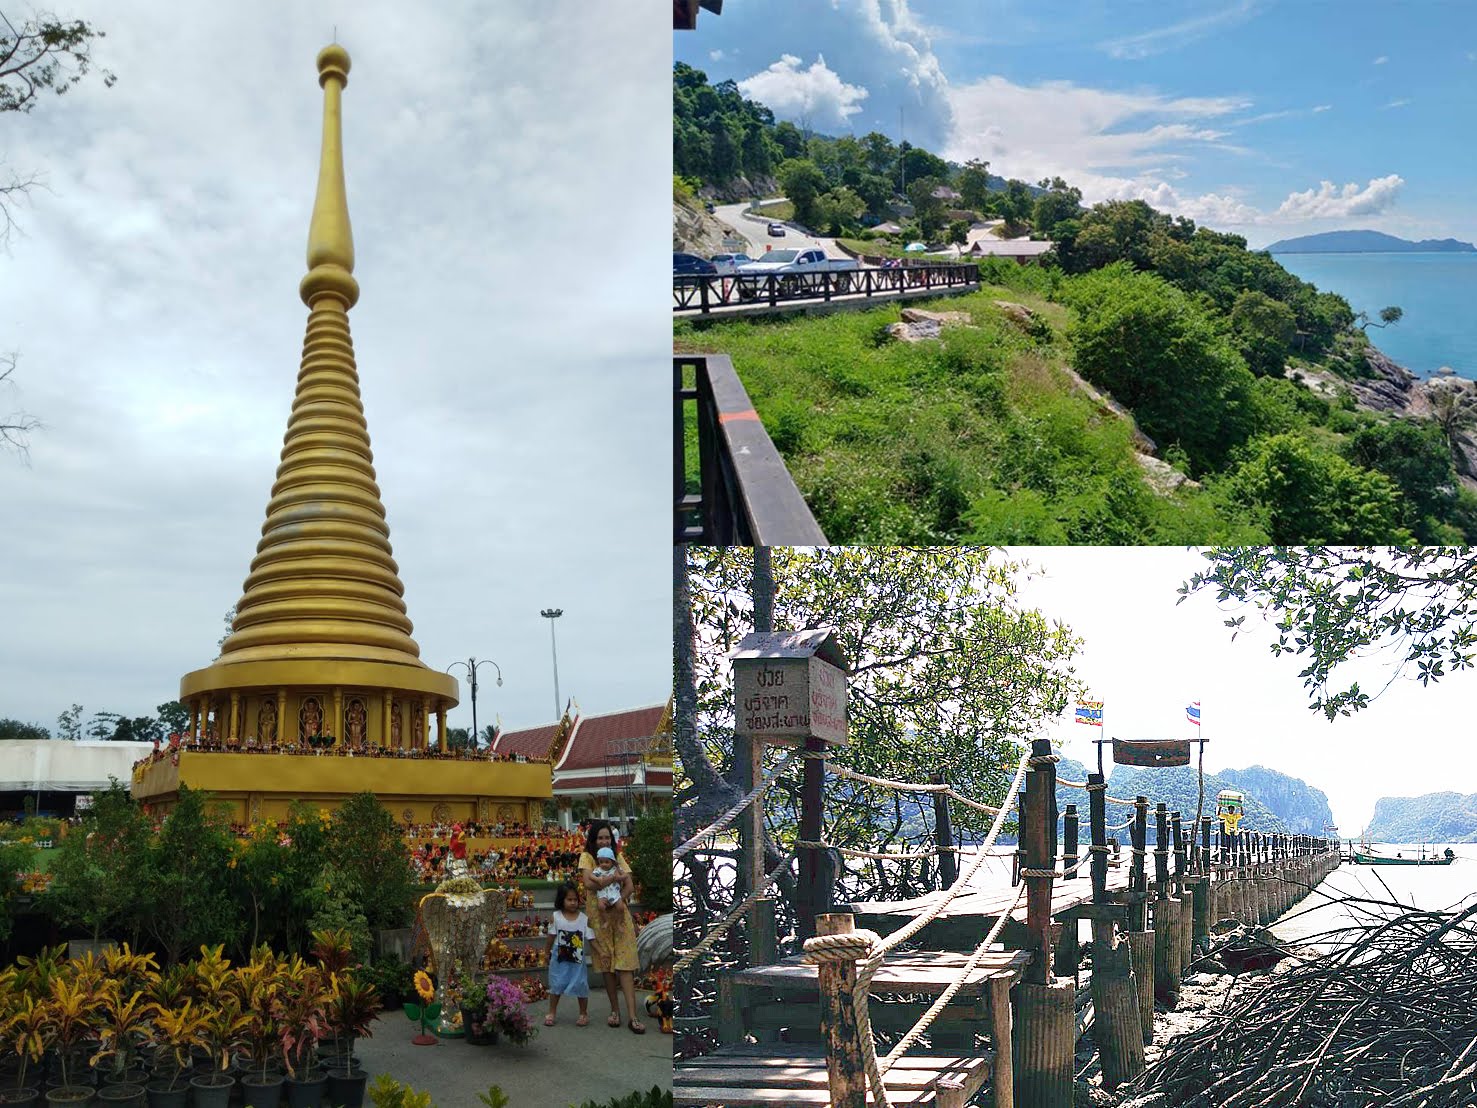 ทริปไฮไลท์เมืองนคร- ไหว้ขอพรตาไข่วัดเจดีย์ - สิชล - ขนอม Tour Wat Chedi Ai khai - Sichon - Khanom N